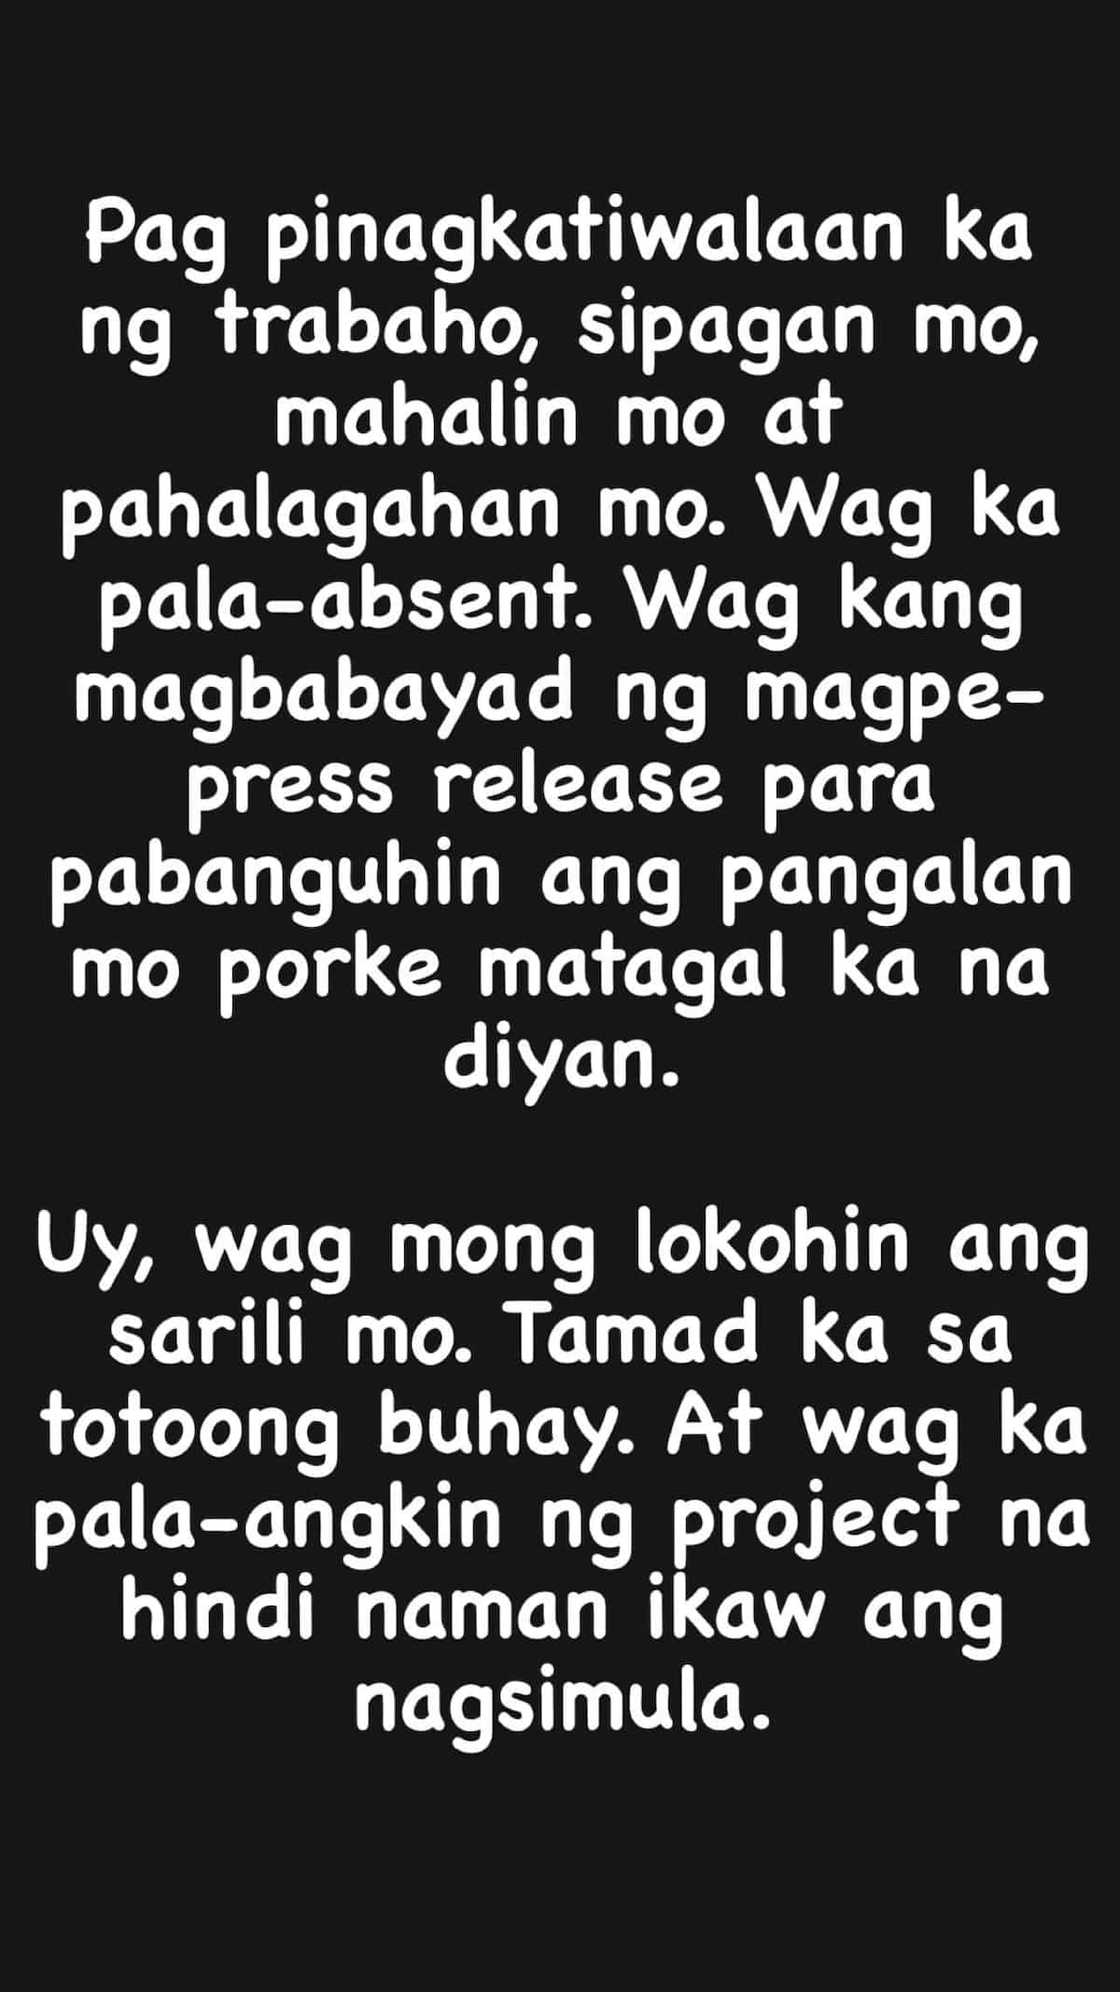 Ogie Diaz, may hugot sa socmed: “Wag kang magbabayad ng magpe-press release para pabanguhin ang pangalan mo”